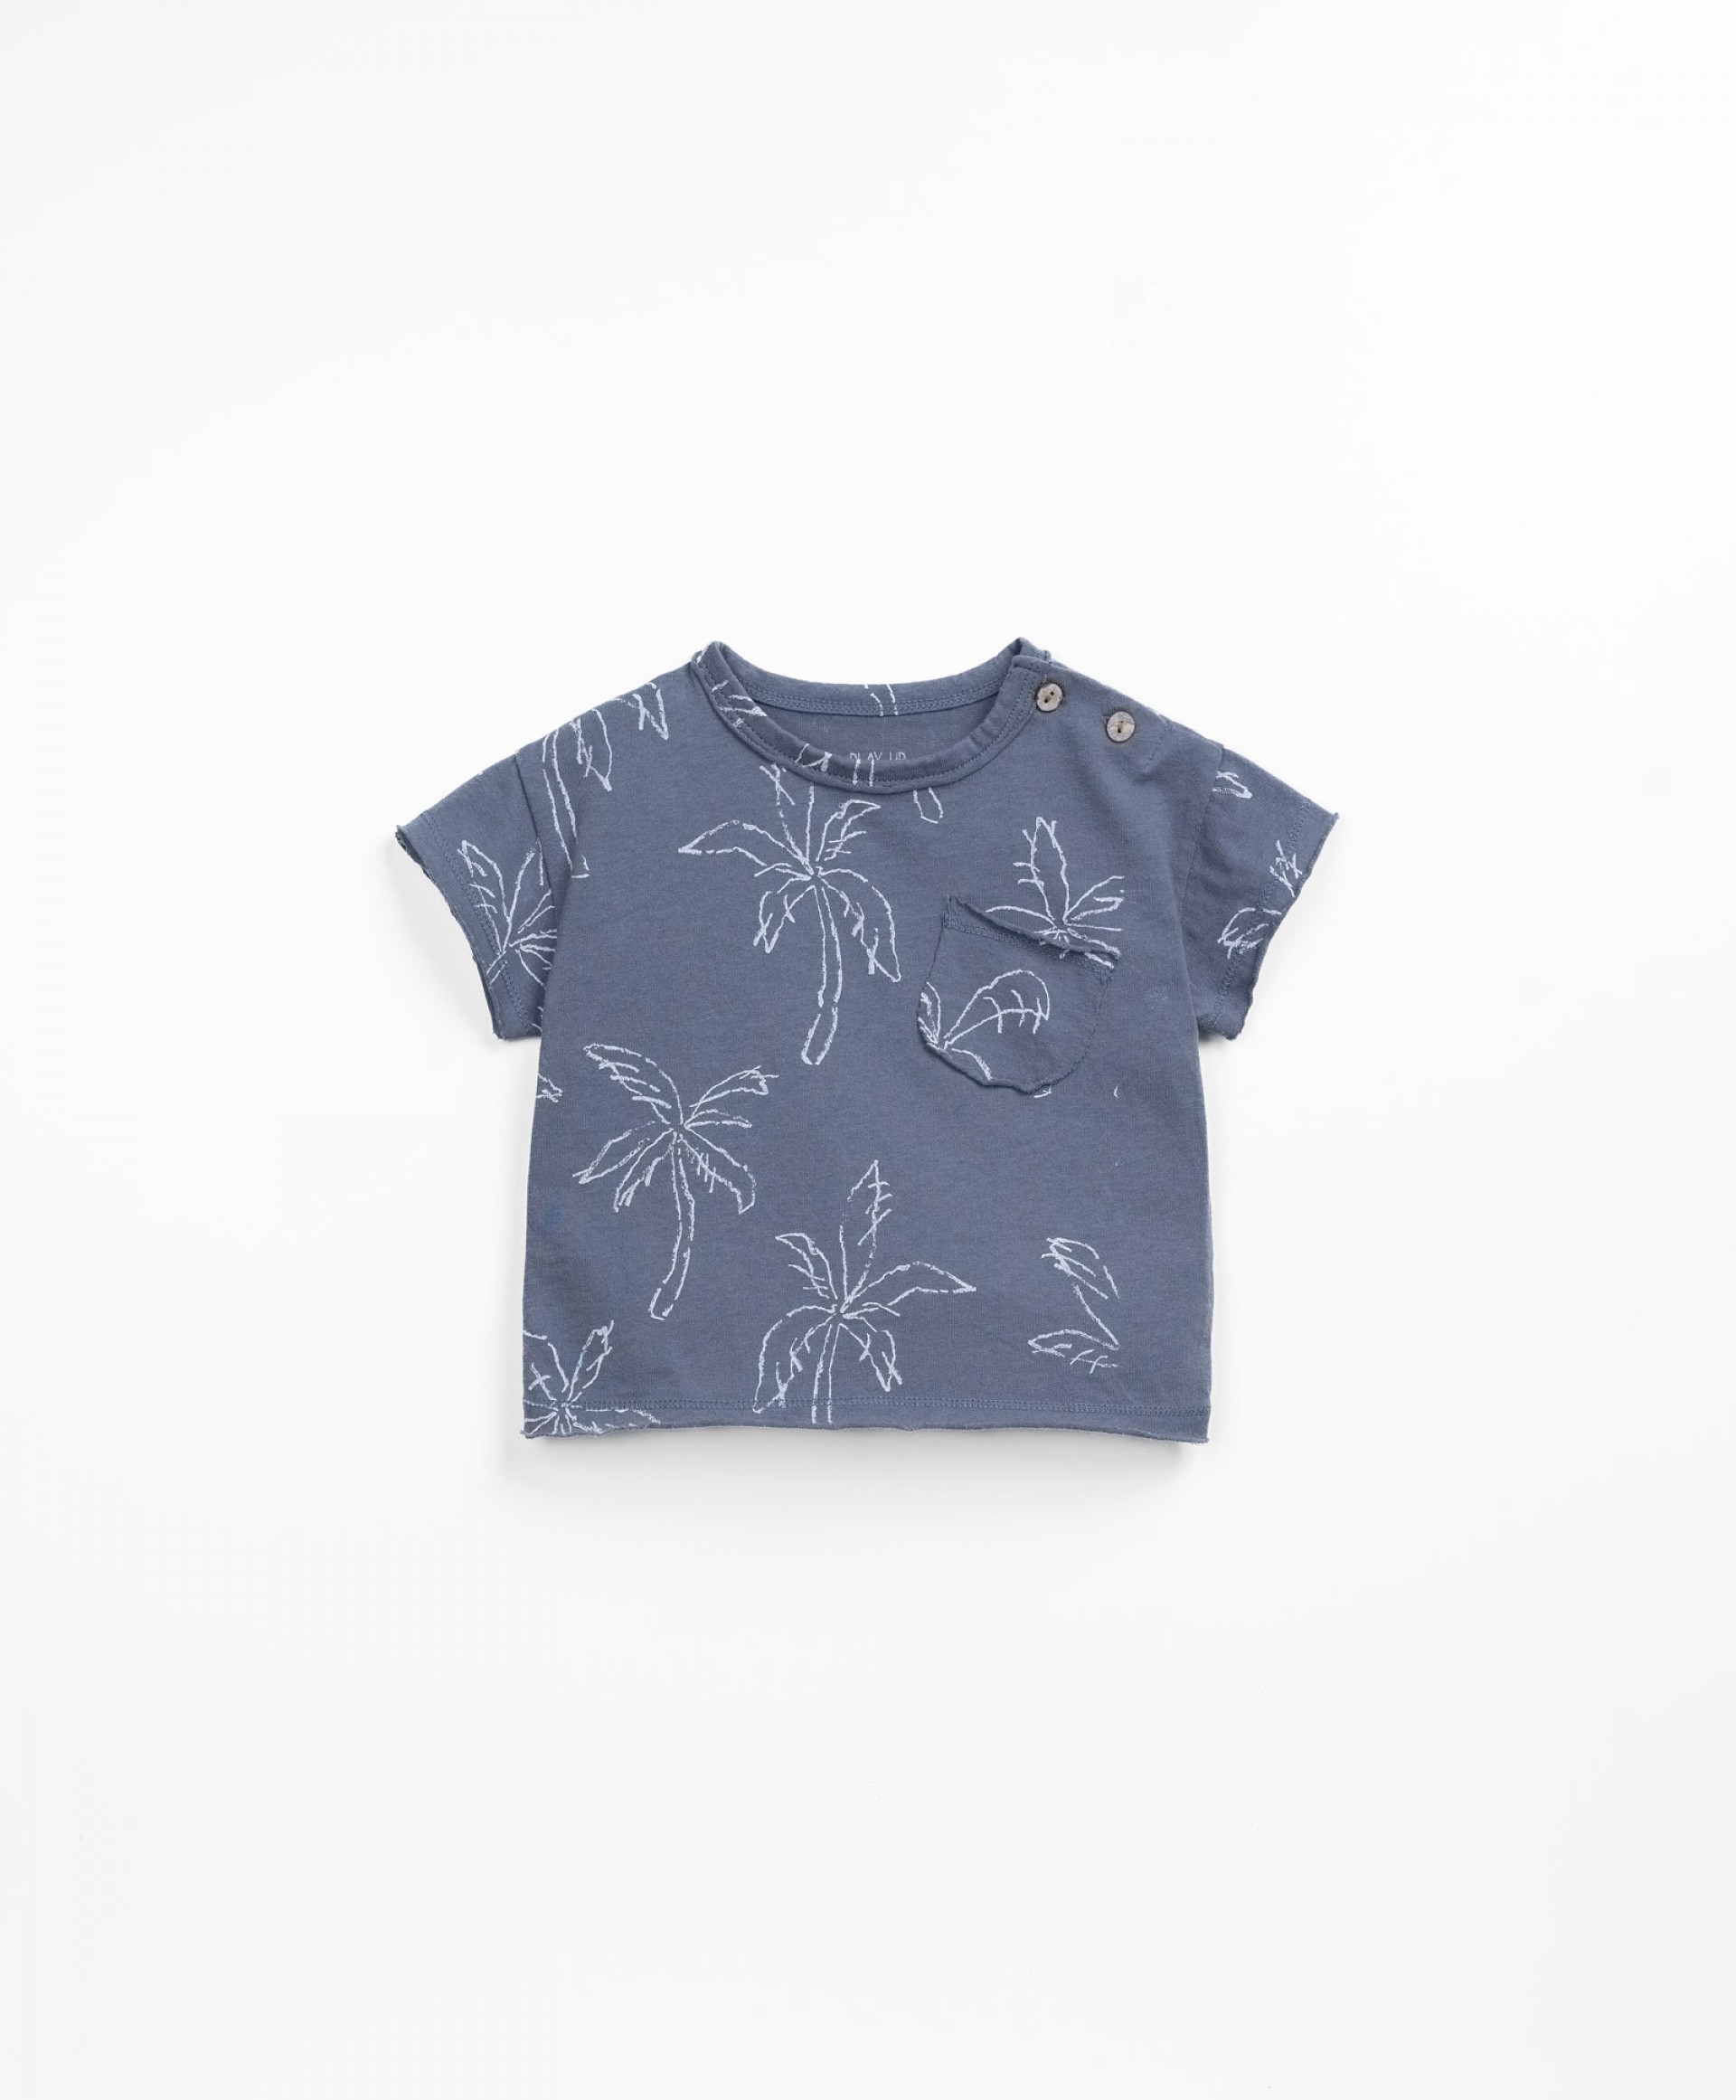 T-shirt avec imprim de palmiers | Textile Art